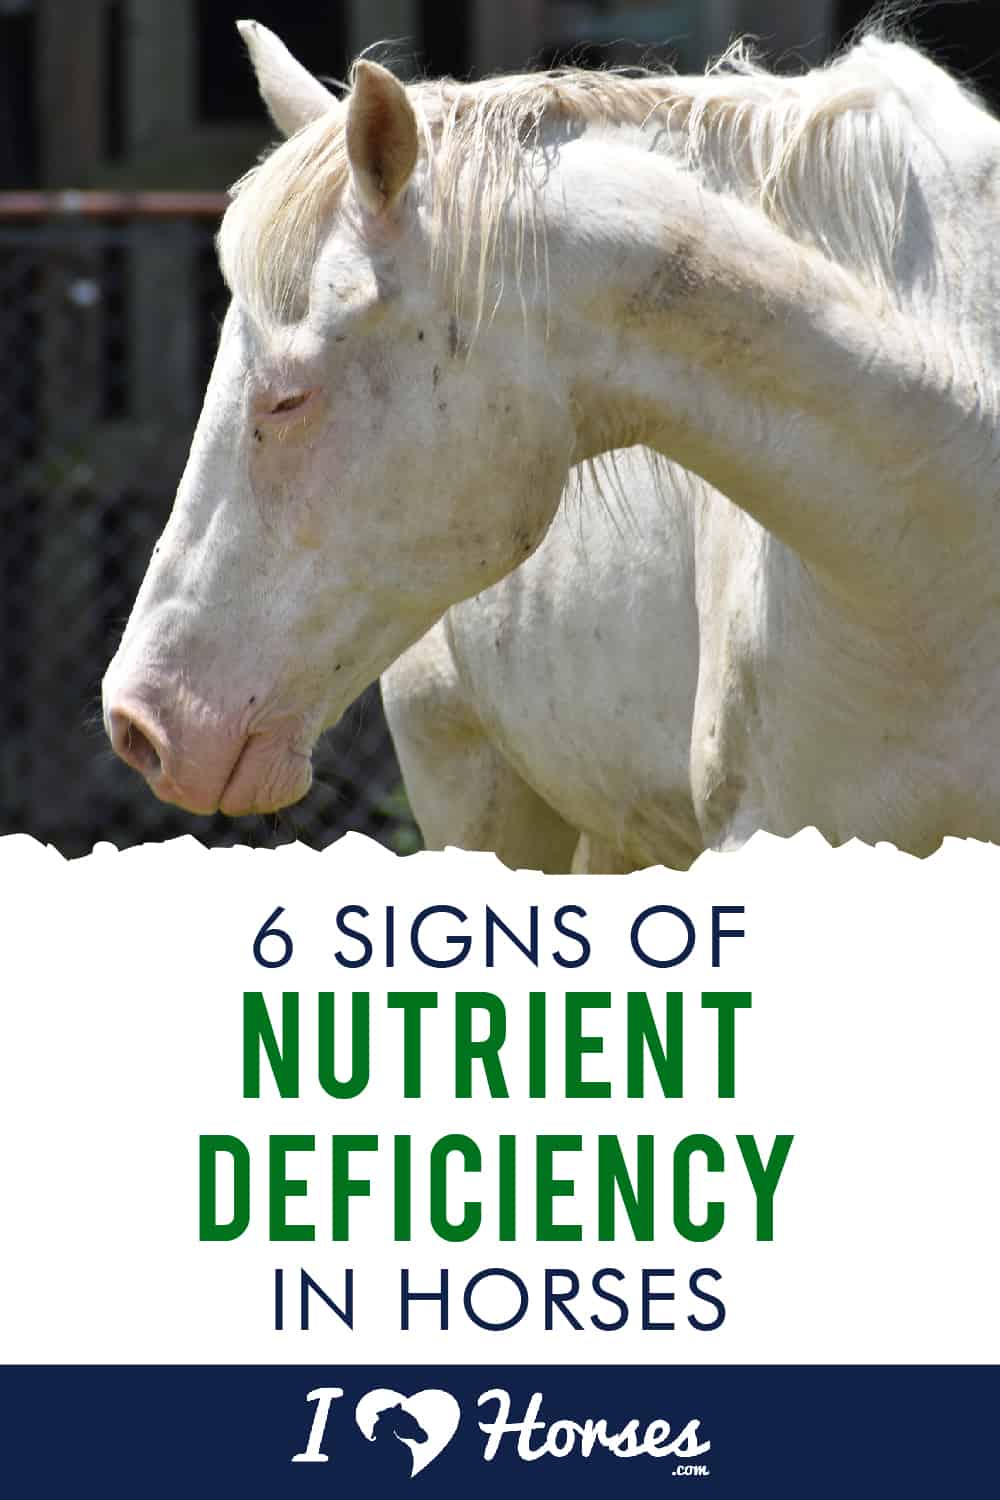 6 Telltale Signs of Nutrient Deficiency in Horses